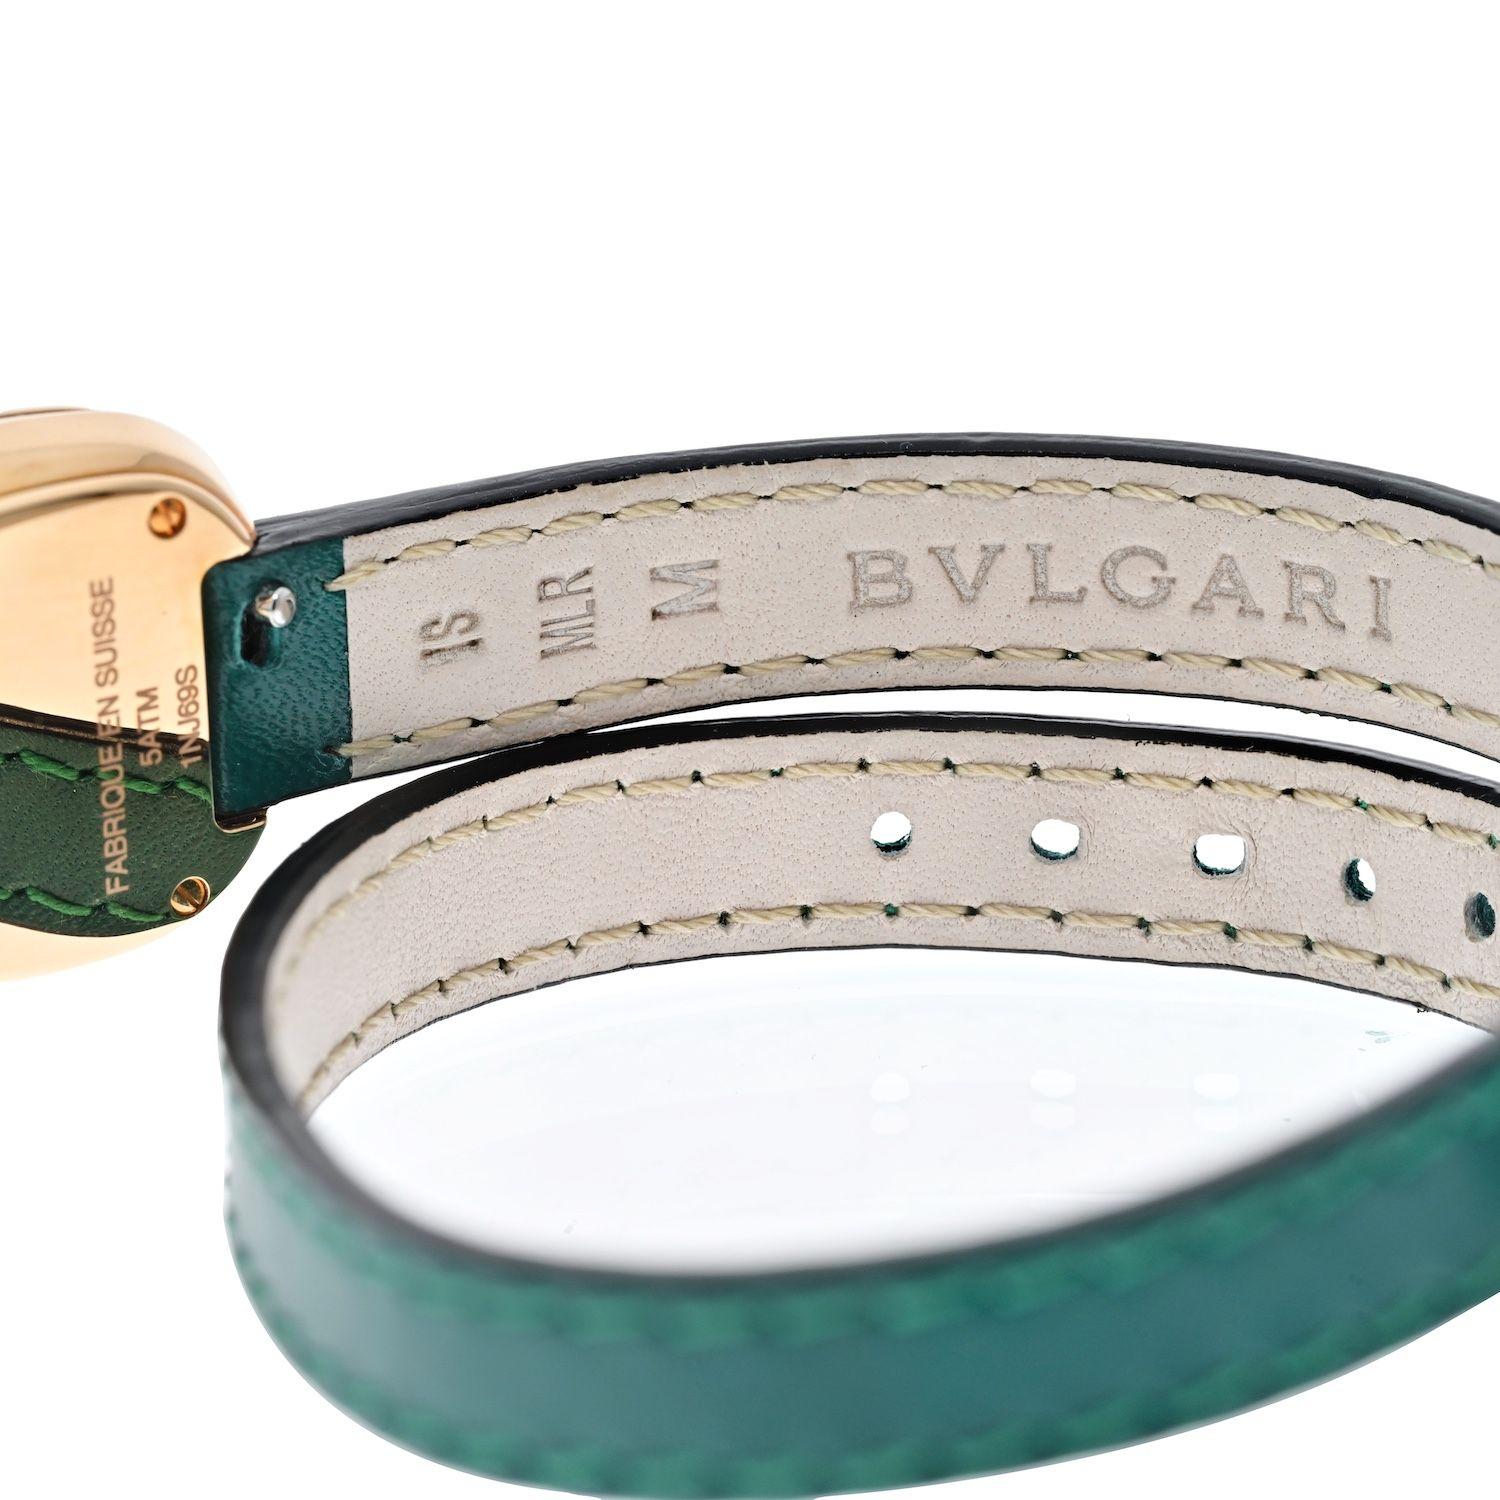 Schöne Uhr zum Verschenken oder für sich selbst kaufen: Bvlgari Serpenti Lederarmband Wrap Watch. Sie ist in der besten Mode des italienischen Designers gefertigt, mit einem Roségoldgehäuse in Form einer Schlange, mit runden Diamanten auf dem